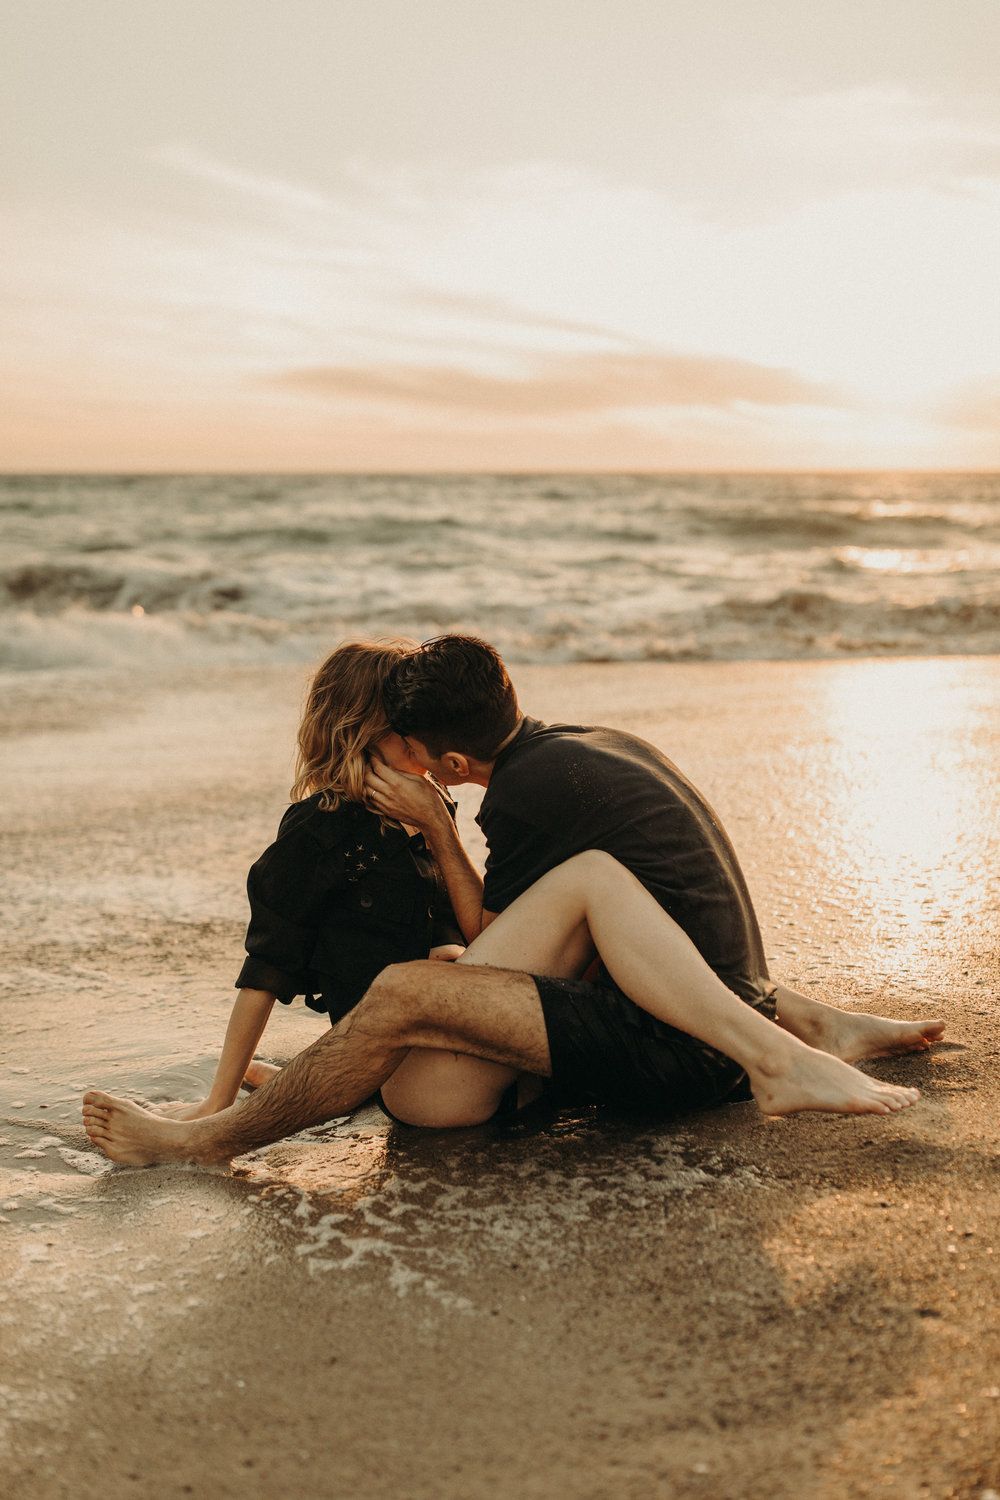 Жесткий и романтический секс на далёком пляже